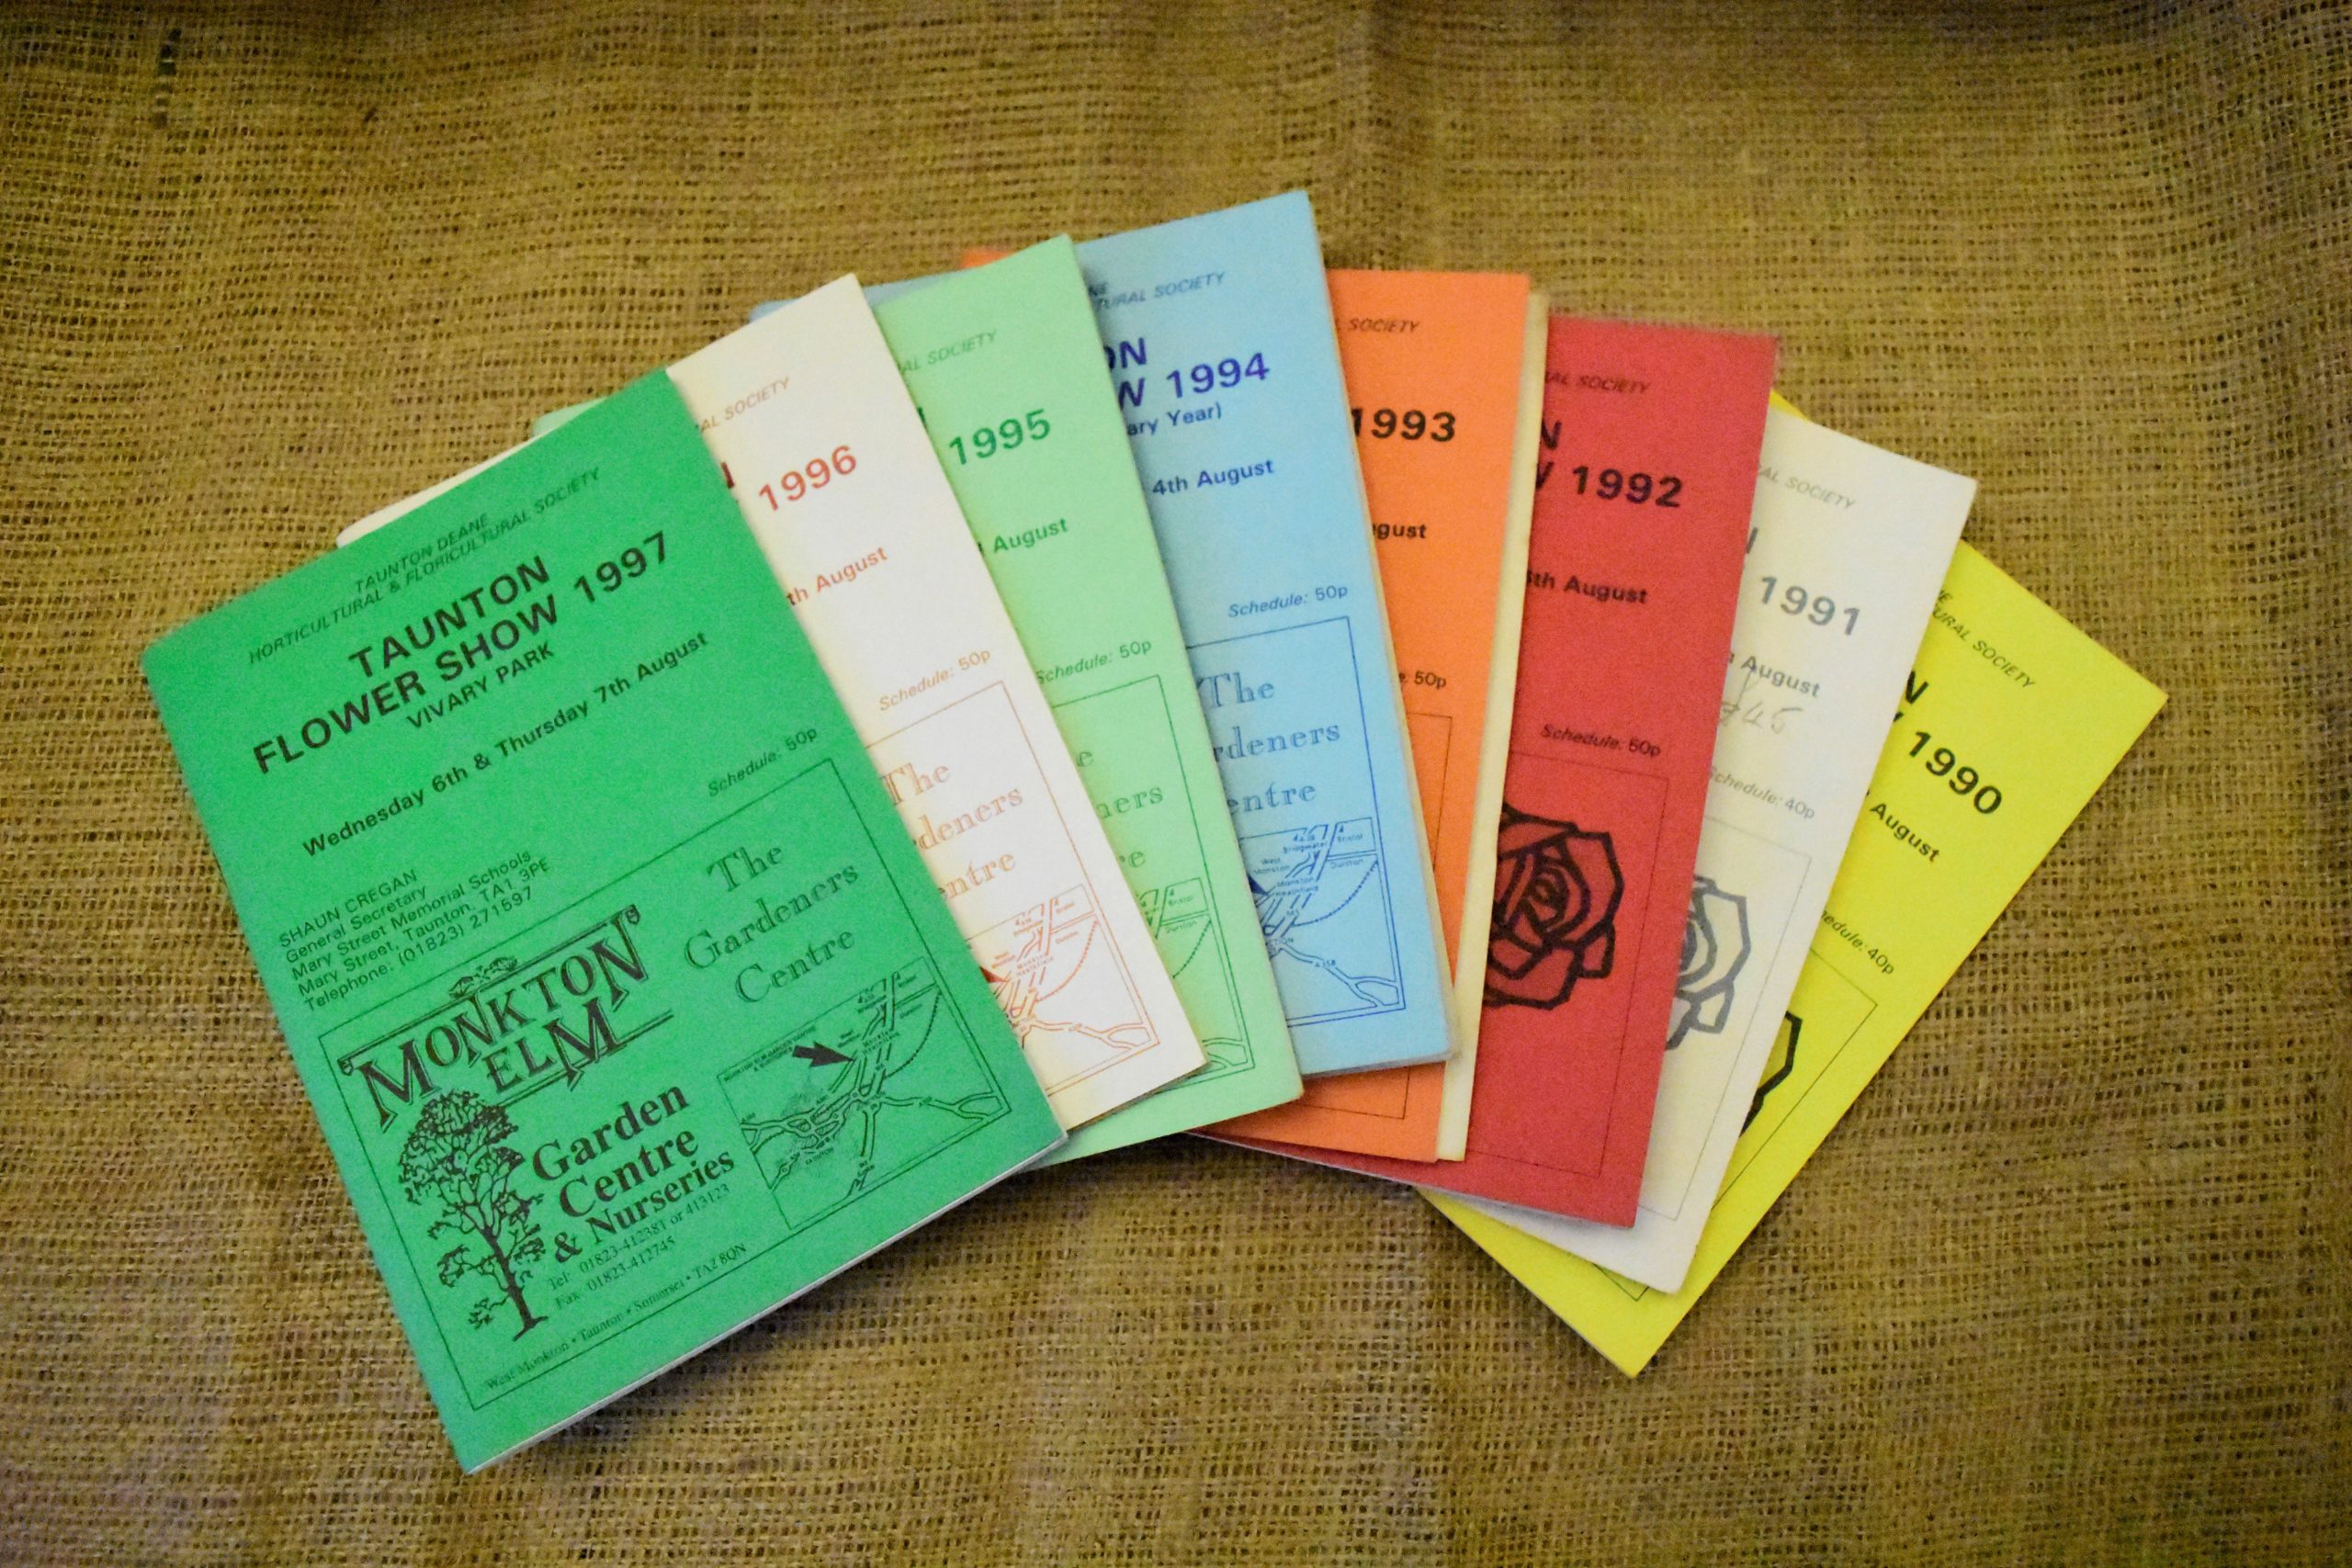 TFS programmes 1990s